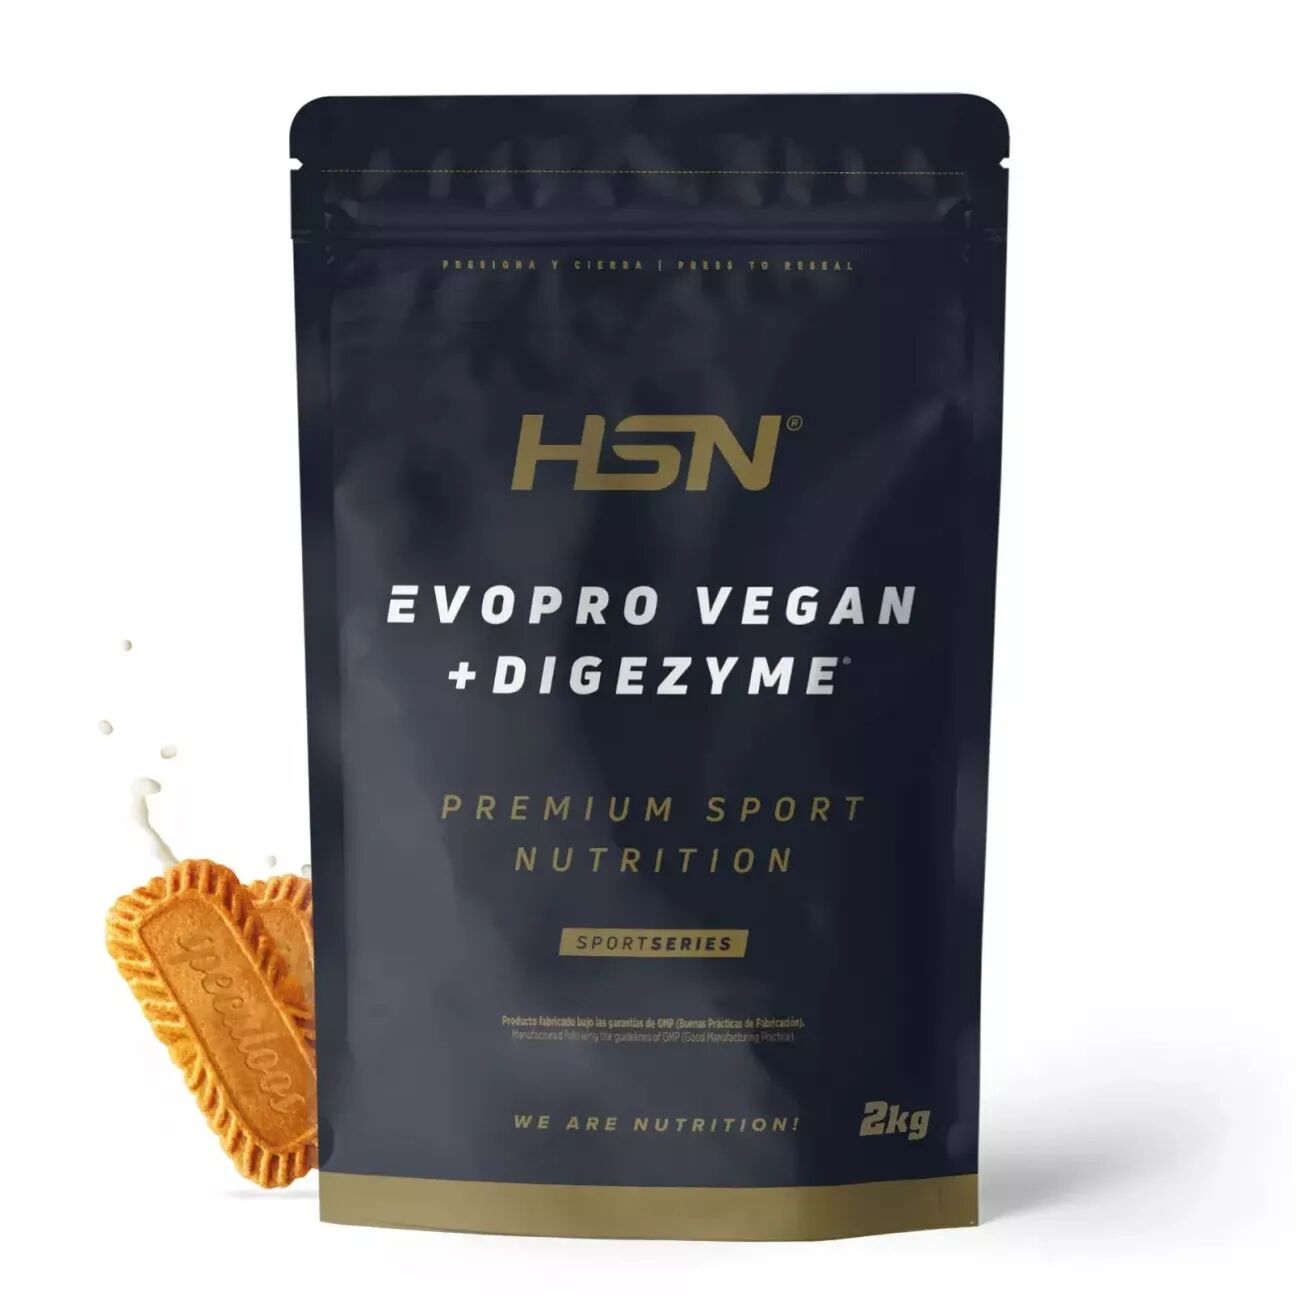 HSN Evopro vegan (mezcla proteínas premium) + digezyme® 2kg speculoos